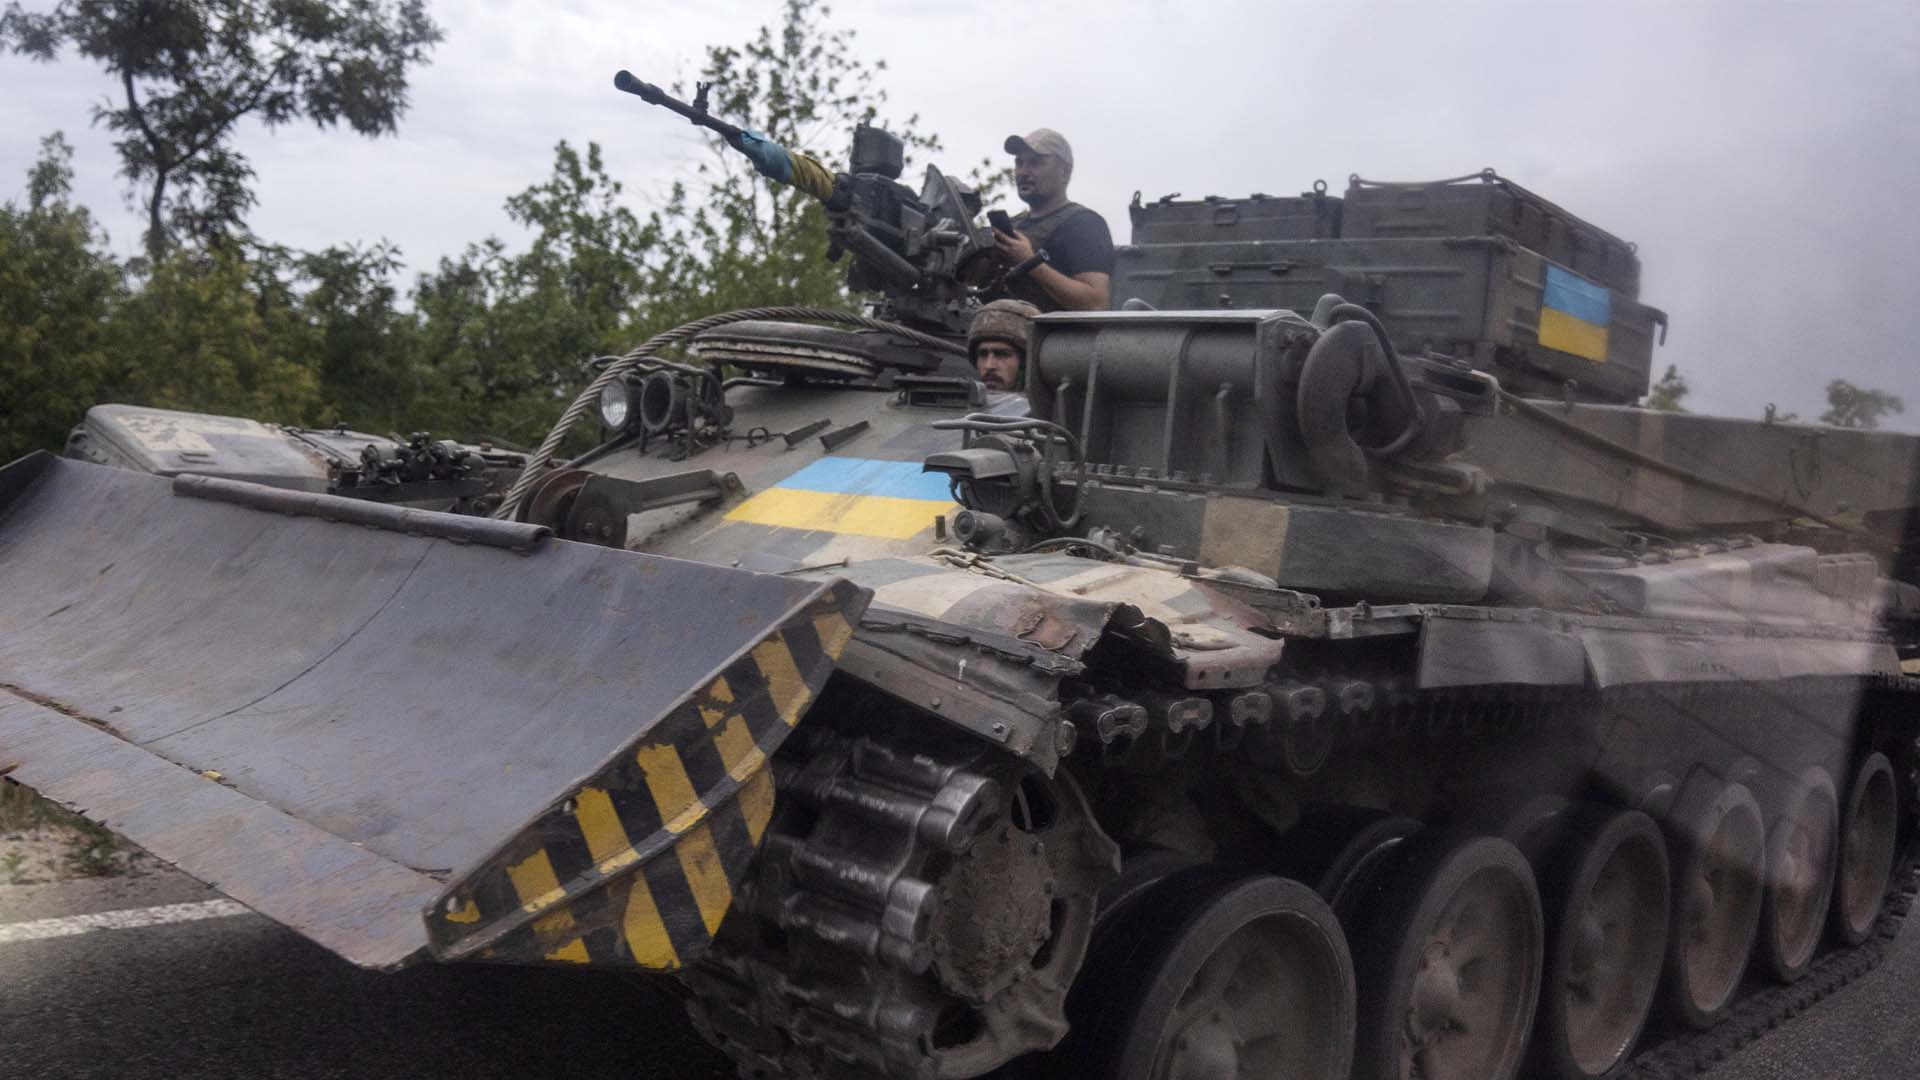 Des soldats ukrainiens dans un char d'assaut sur une route, à Stupochky, dans la région de Donetsk, dans l'est de l'Ukraine, le dimanche 10 juillet 2022. (AP Photo/Nariman El-Mofty)